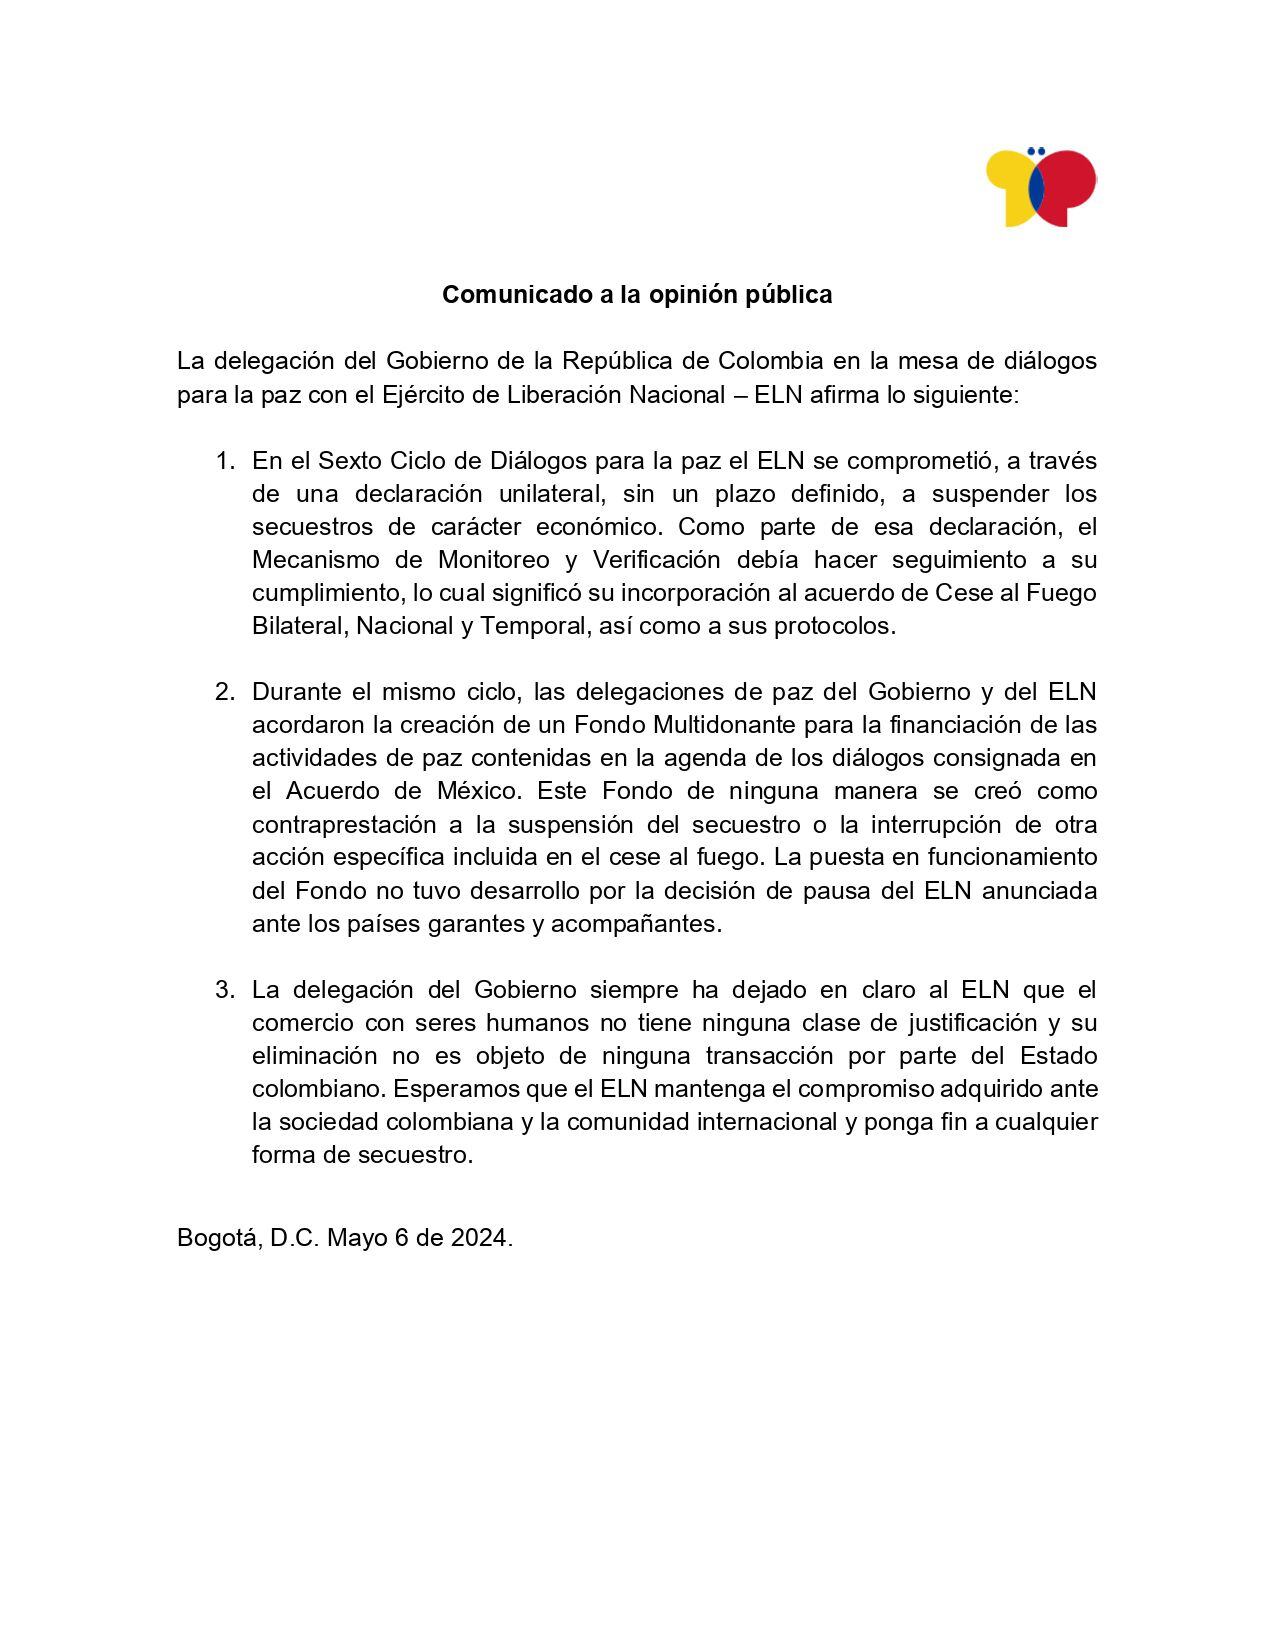 El comunicado también reitera la posición del Gobierno colombiano respecto al secuestro, señalando que el comercio con seres humanos no tiene justificación alguna y que su eliminación no está sujeta a transacciones por parte del Estado.